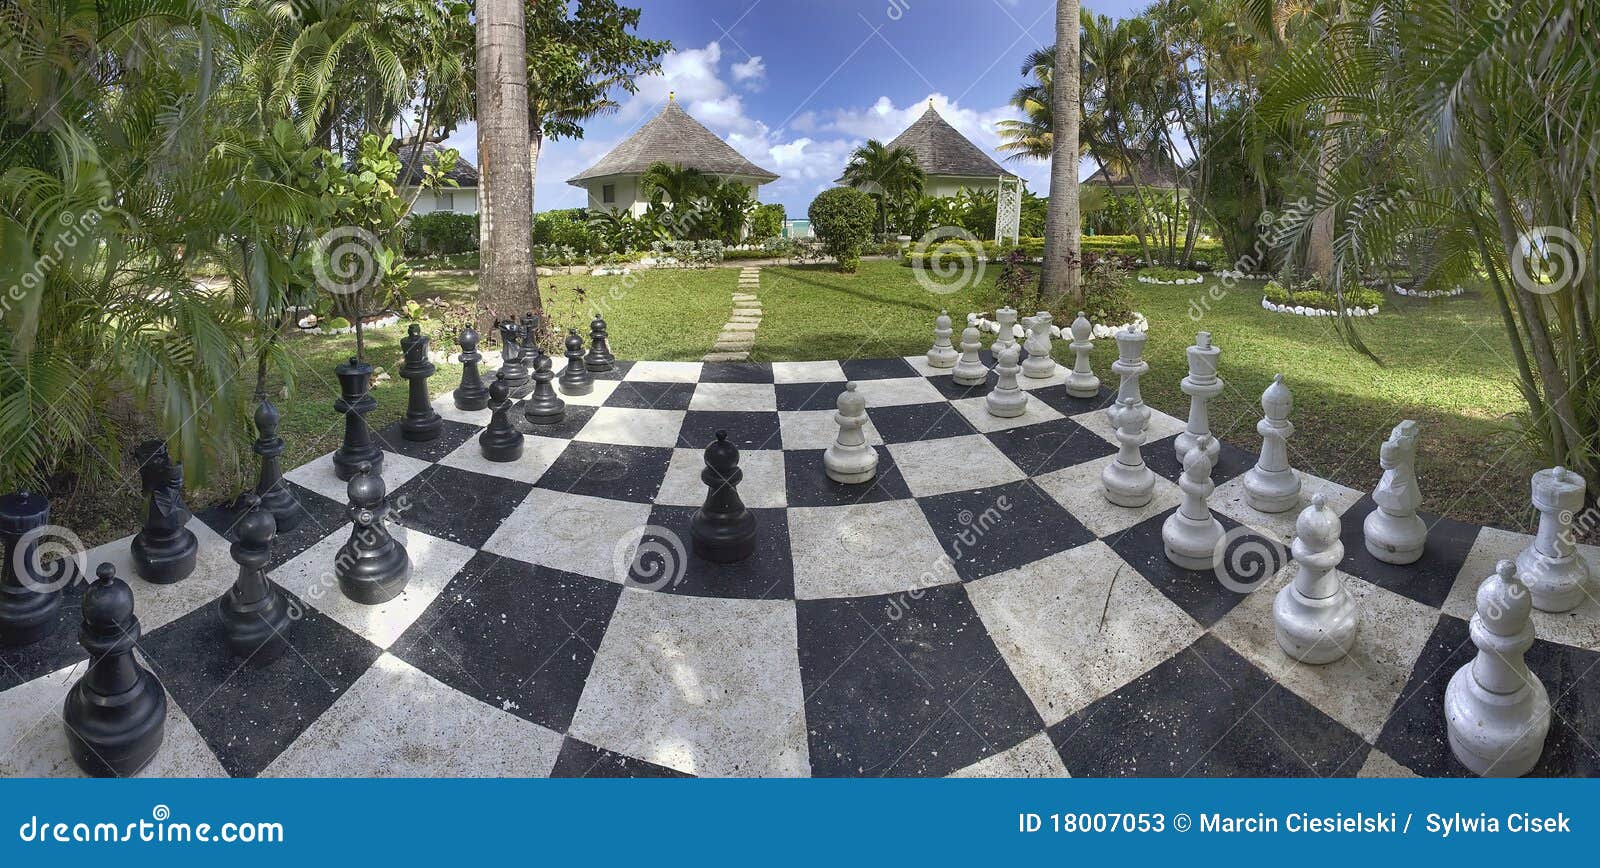 Tabuleiro De Xadrez Em Um Jardim Do Hotel Em Jamaica Foto de Stock